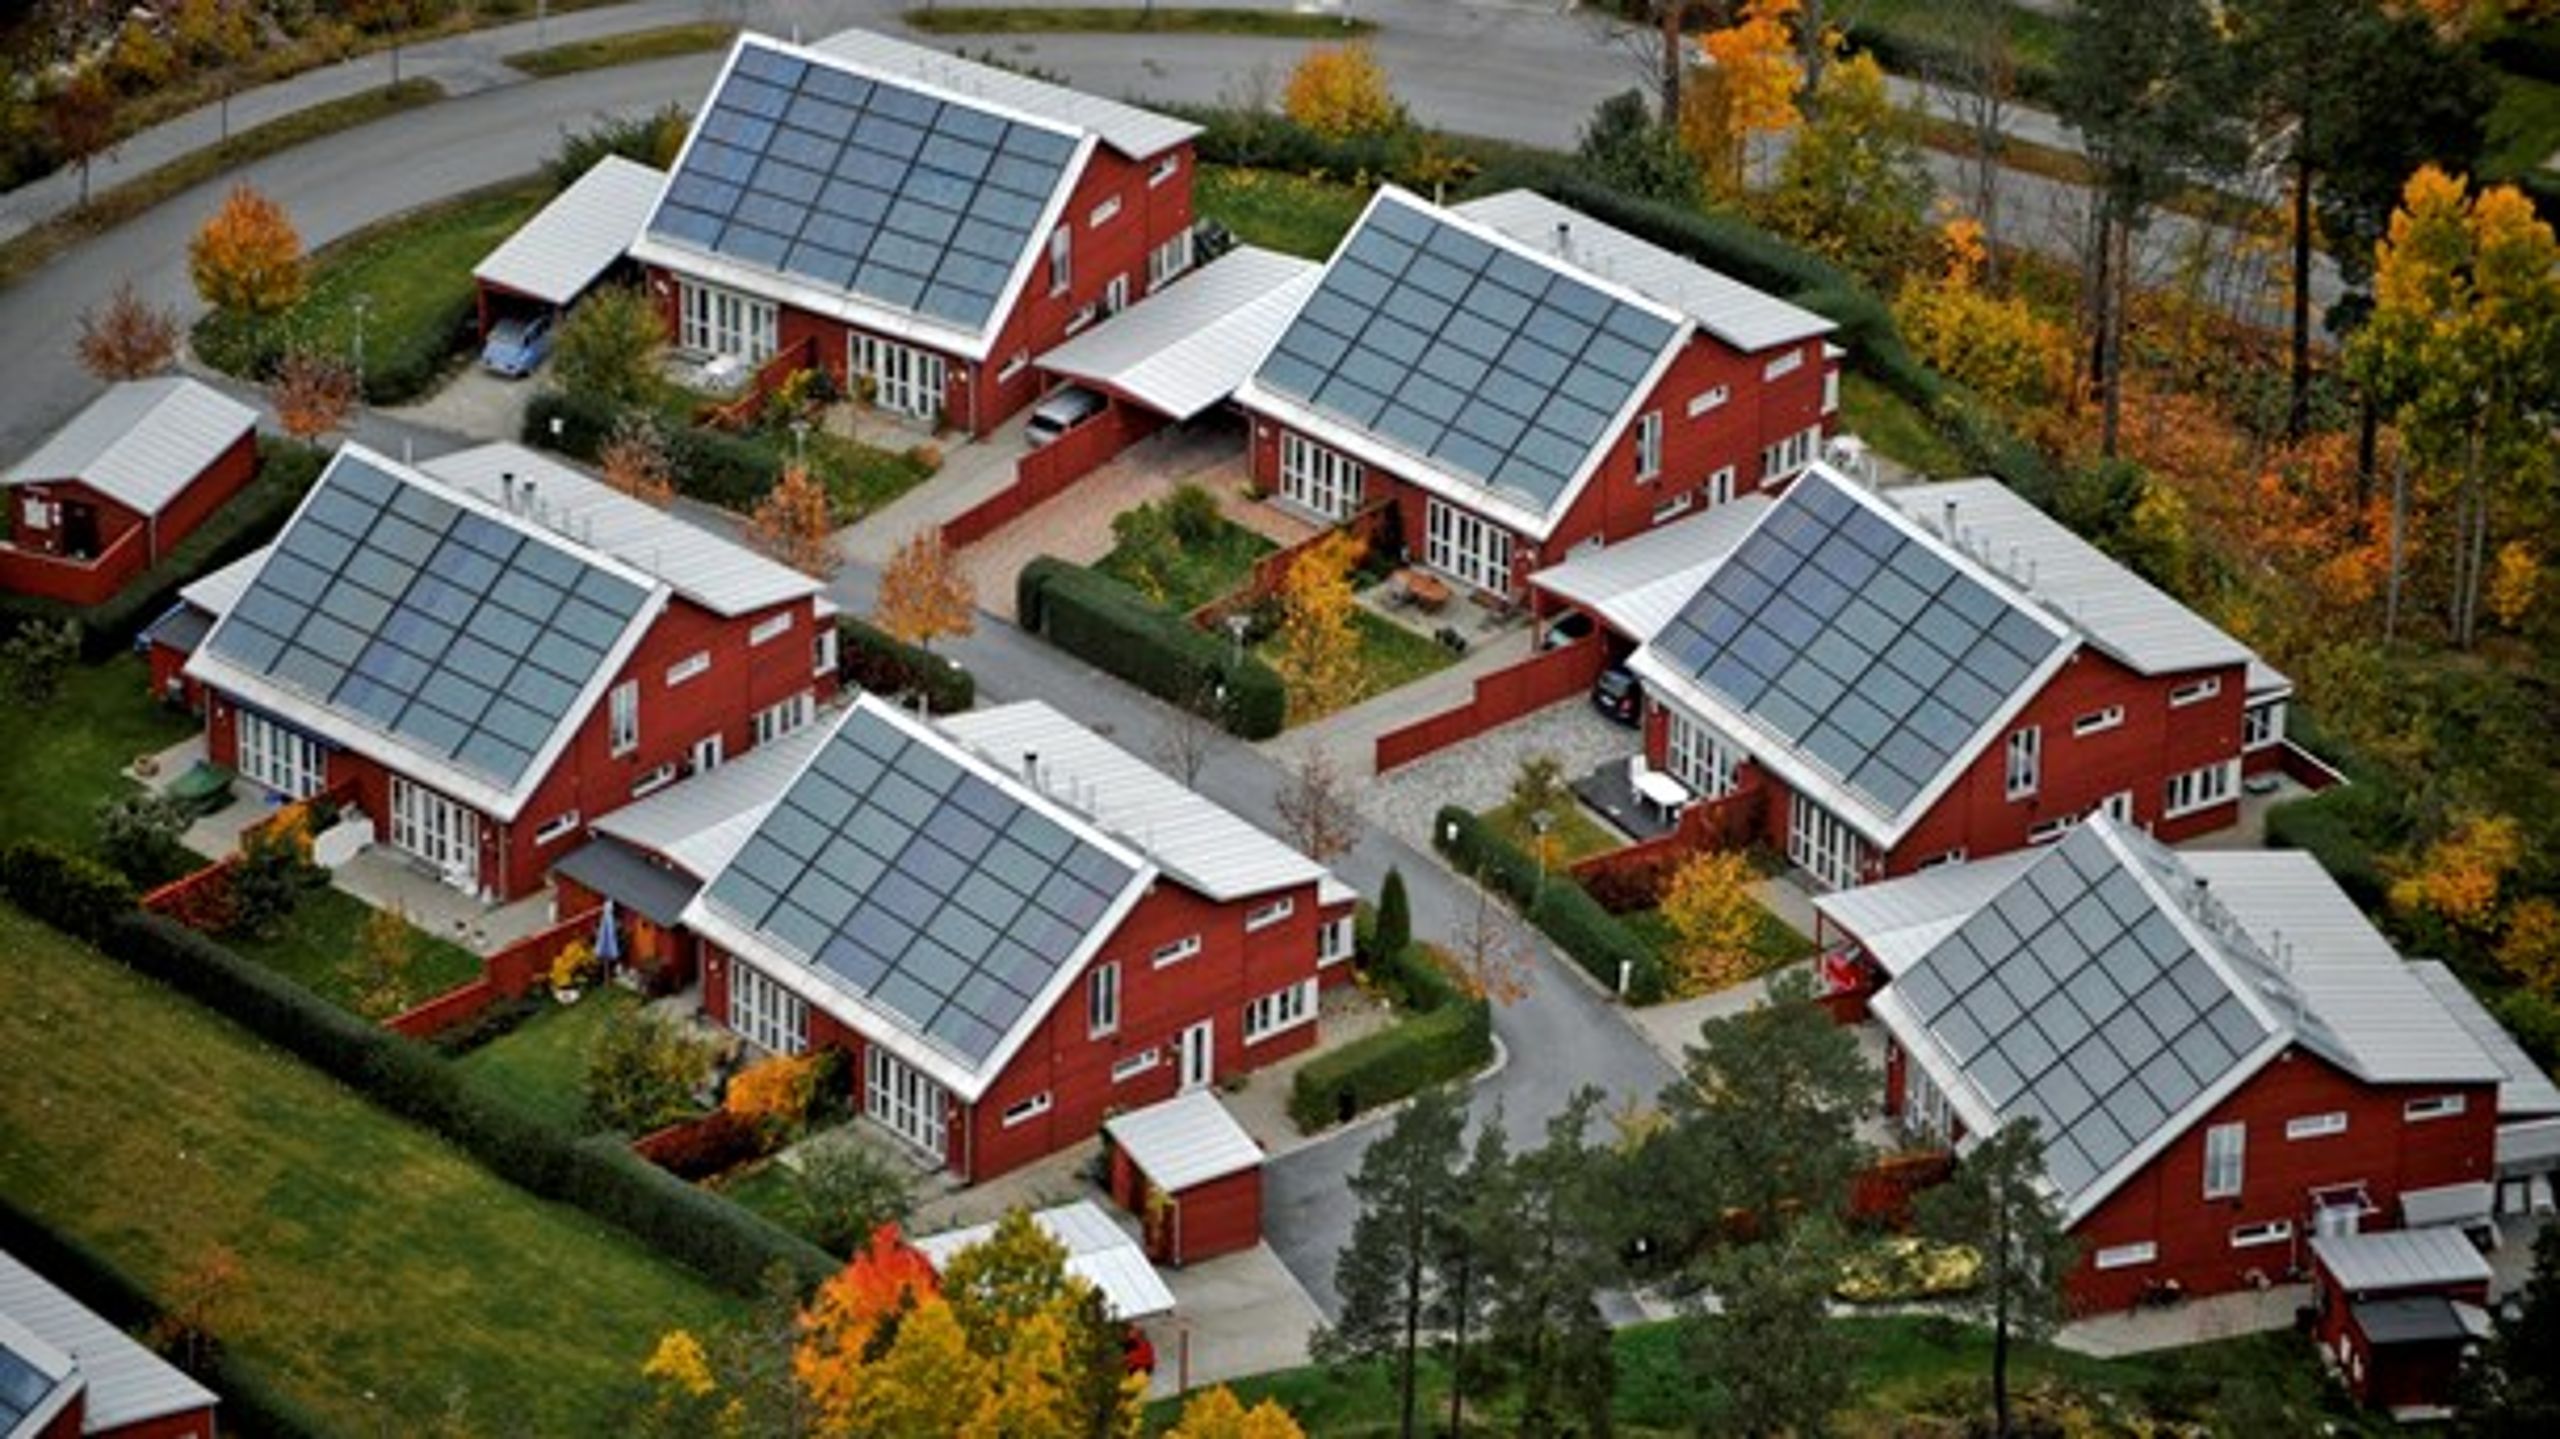 Besluta&nbsp;att grönt avdrag kan göras 2021 för solcellsinstallationer som genomförts såväl 2020 som 2021. Då kan småhusägarna fortsätta vara en aktiv del i energiomställningen, skriver debattören.&nbsp;